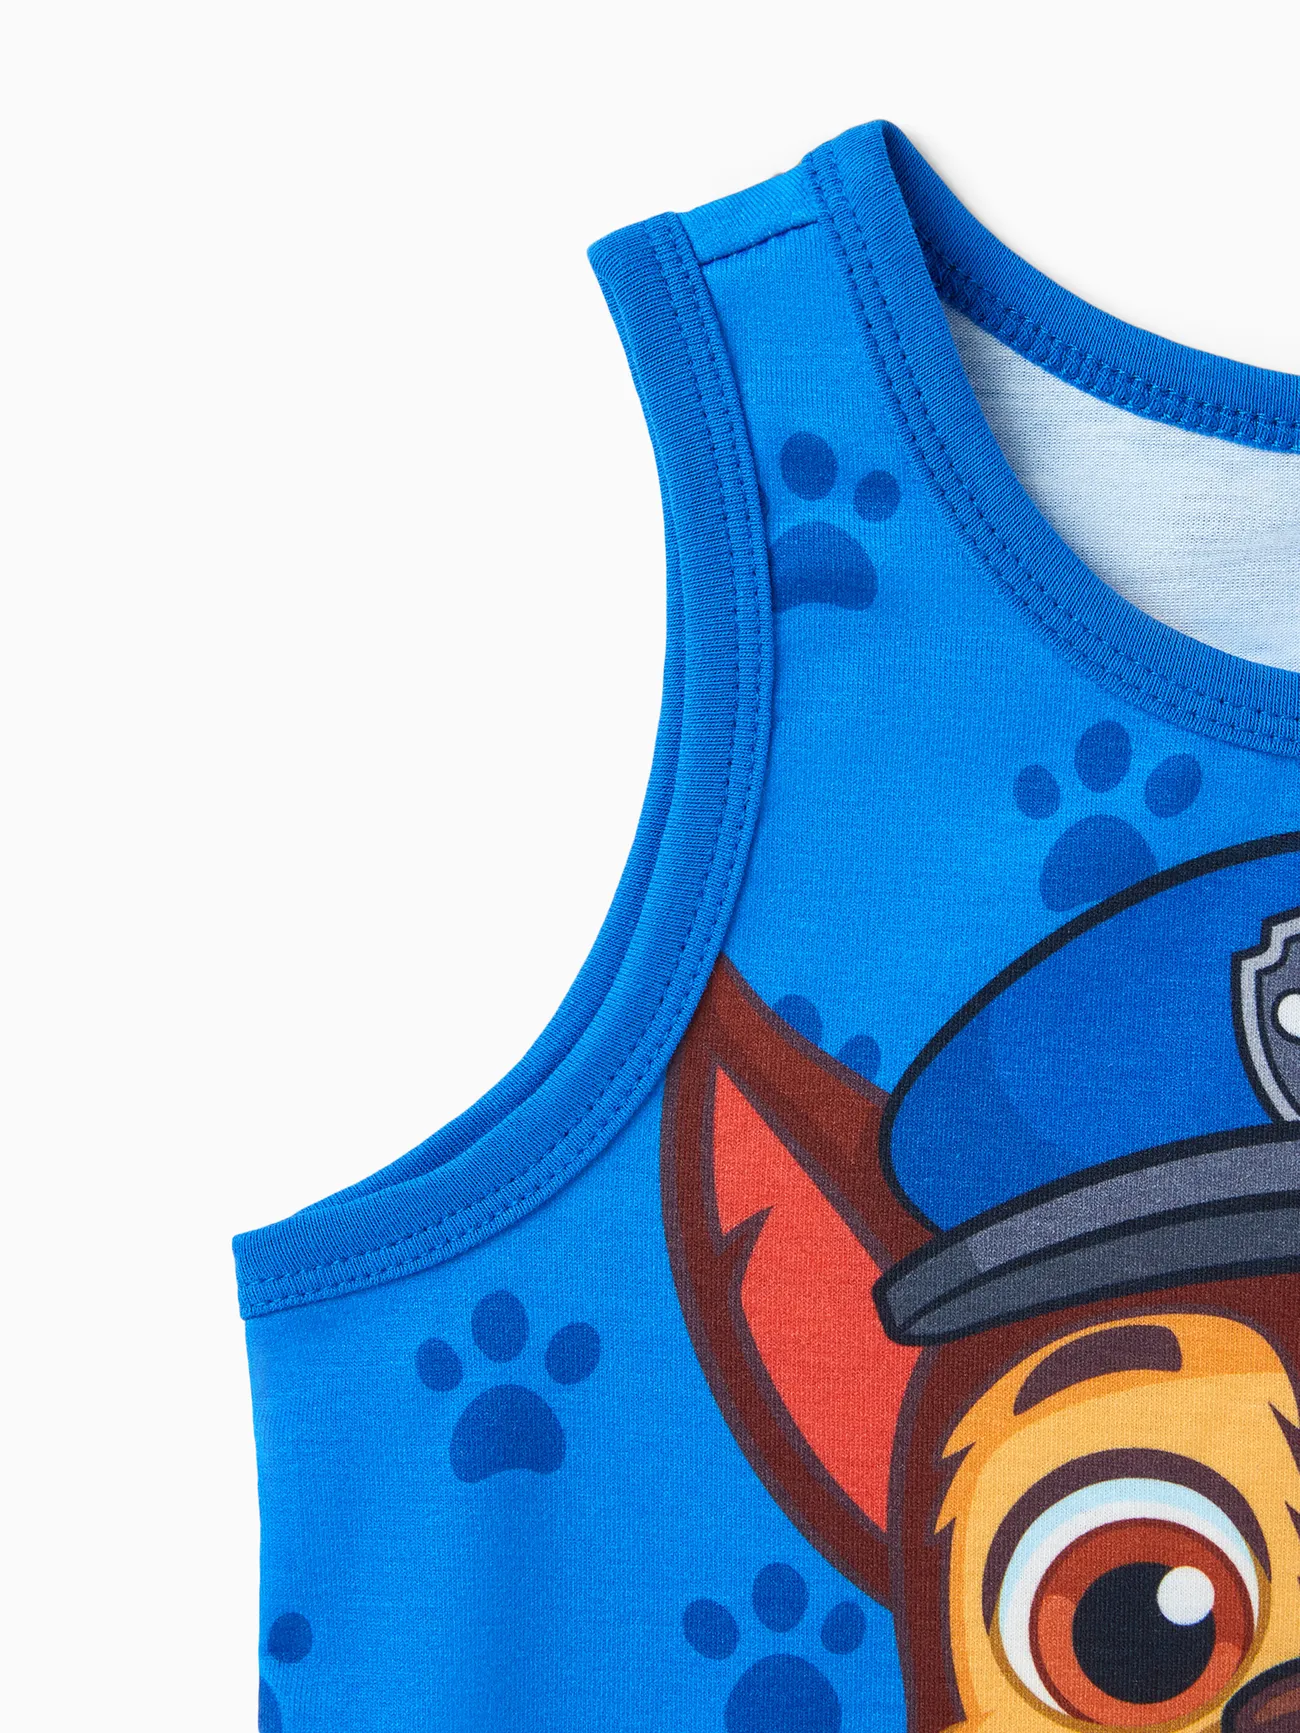 PAW Patrol Toddler Boy Character Print Naia™ Tank Top Blue big image 1